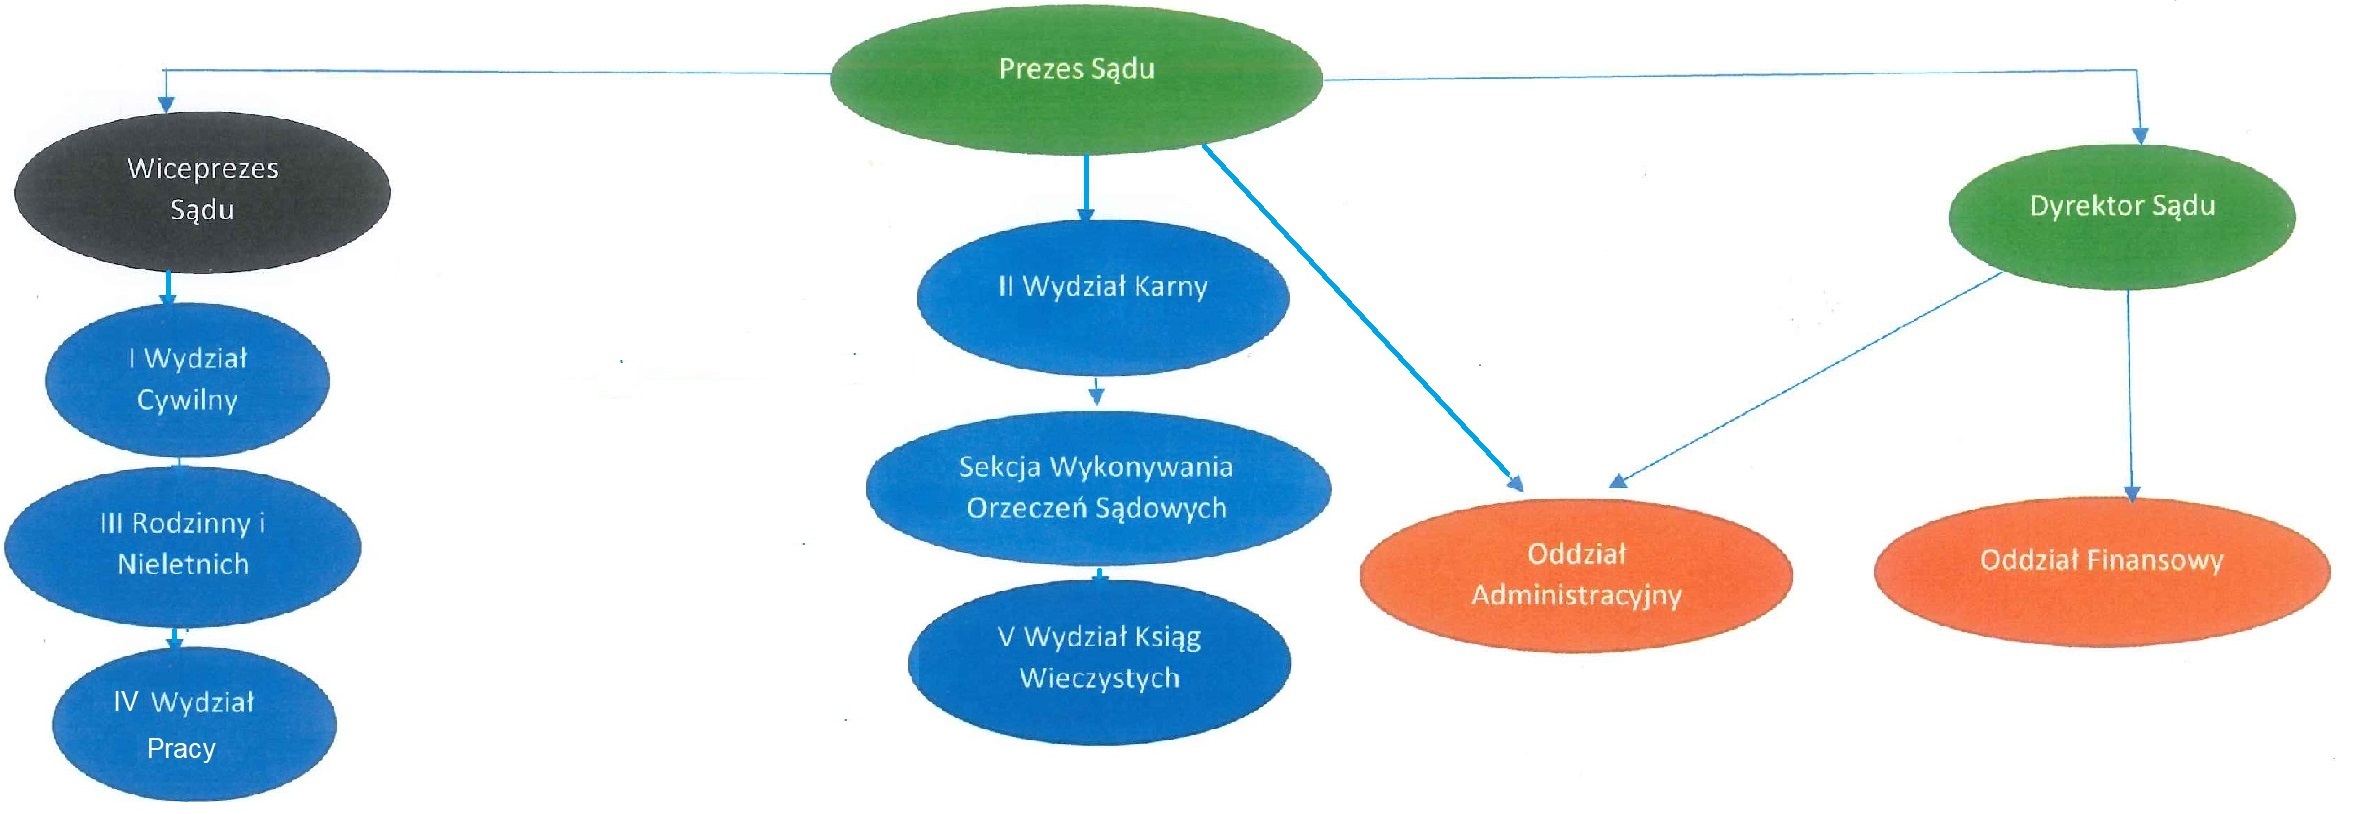 Graficznie przedstawiona struktura organizacyjna (Prezes, Wiceprezes, Dyrektor oraz podległe im komórki organizacyjne)